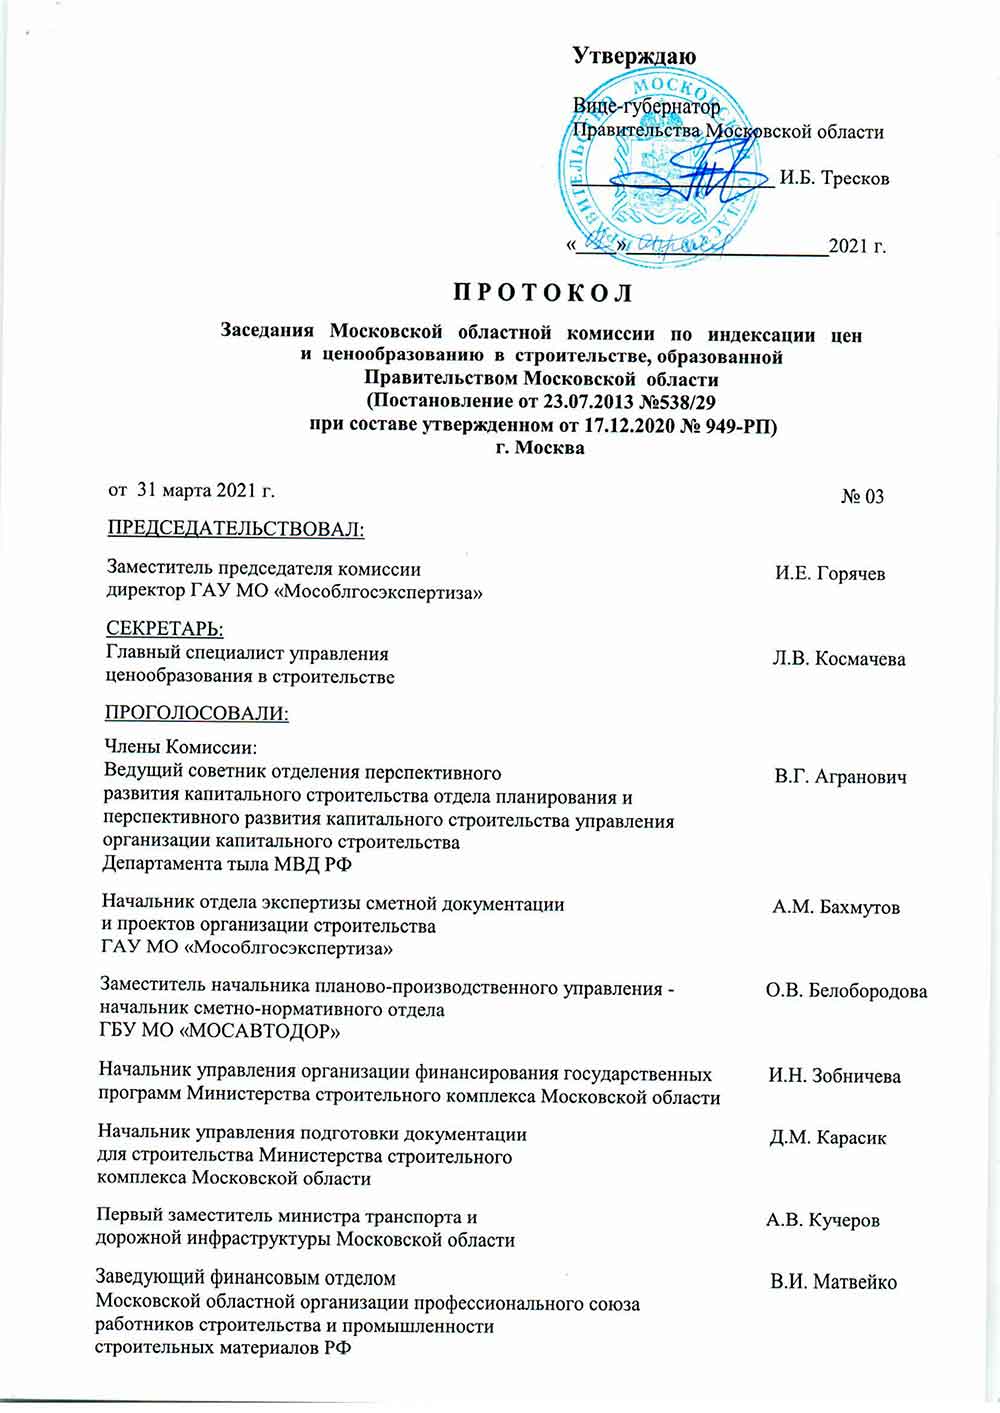 Протокол Мособлгосэкспертизы №03 от 31.03.2021 года